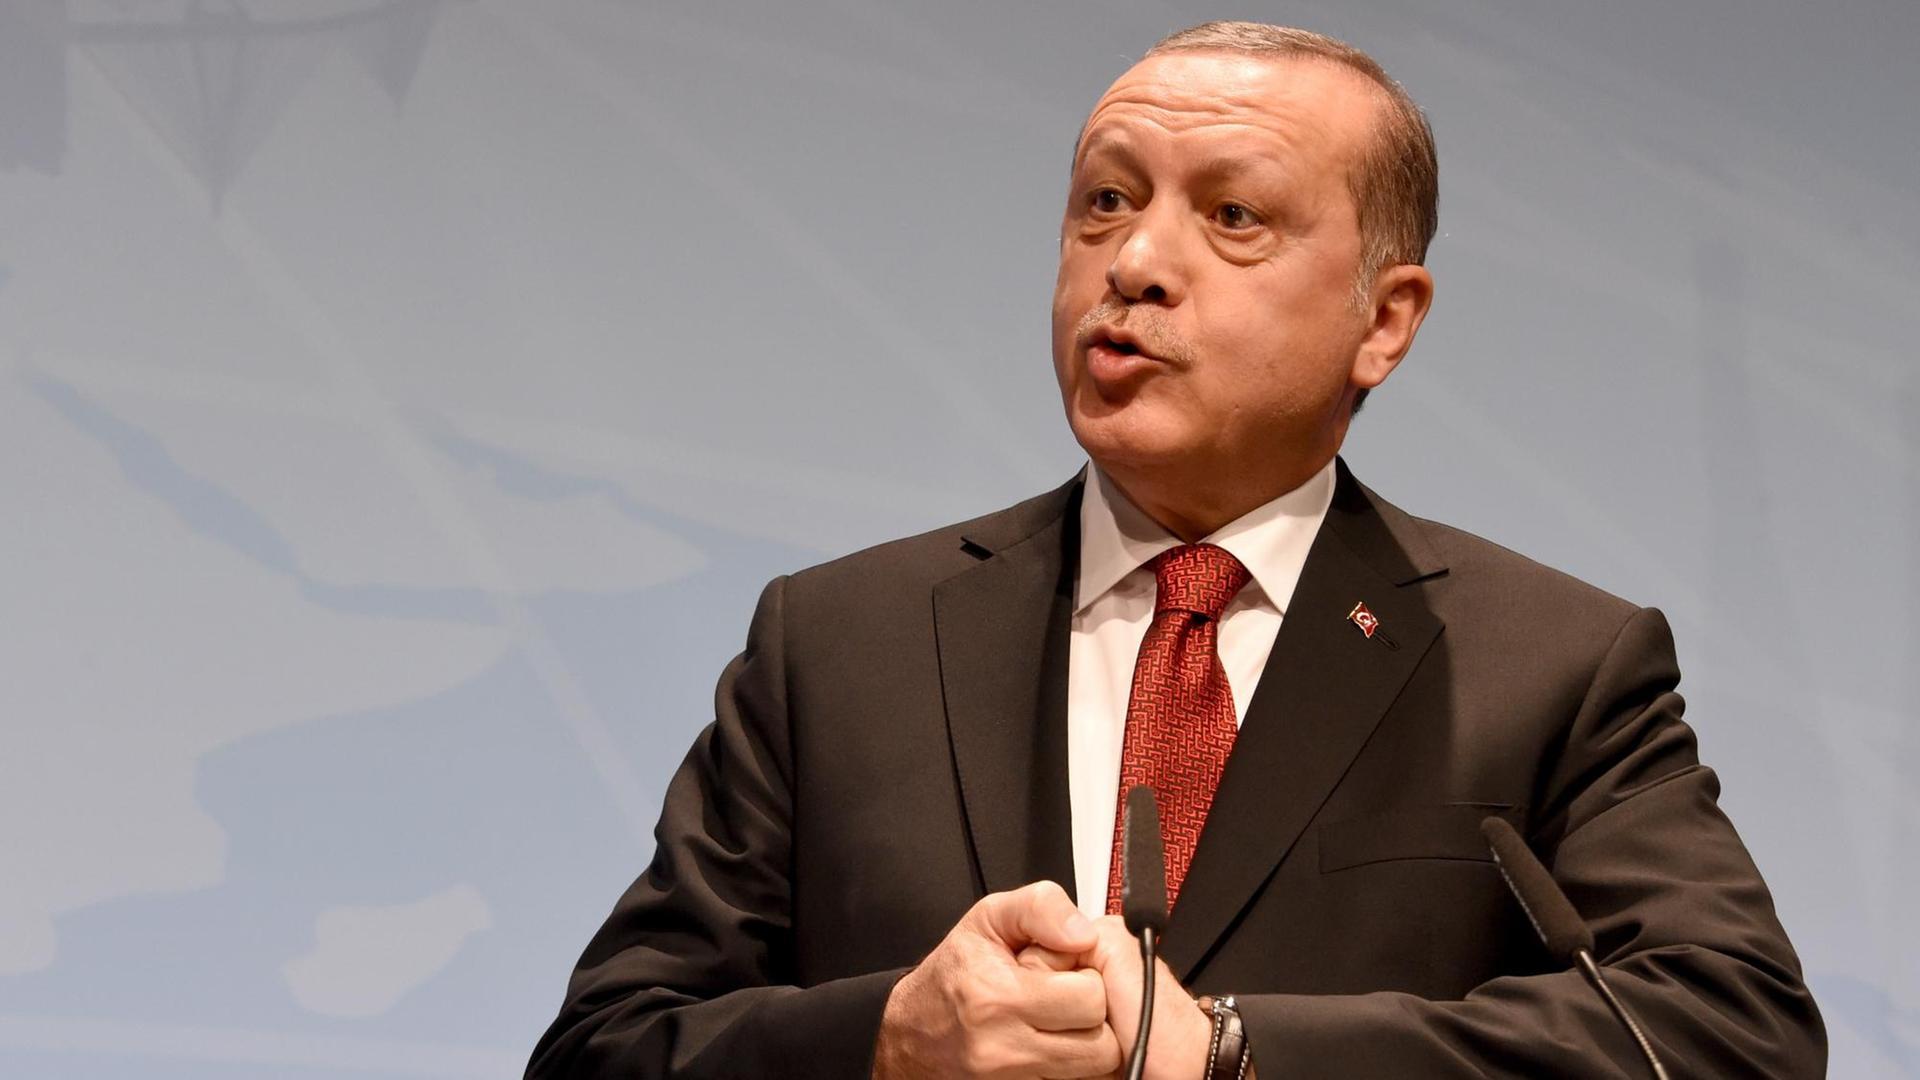 Erdogan spricht auf einer Bühne, seine Hände sind verschränkt.